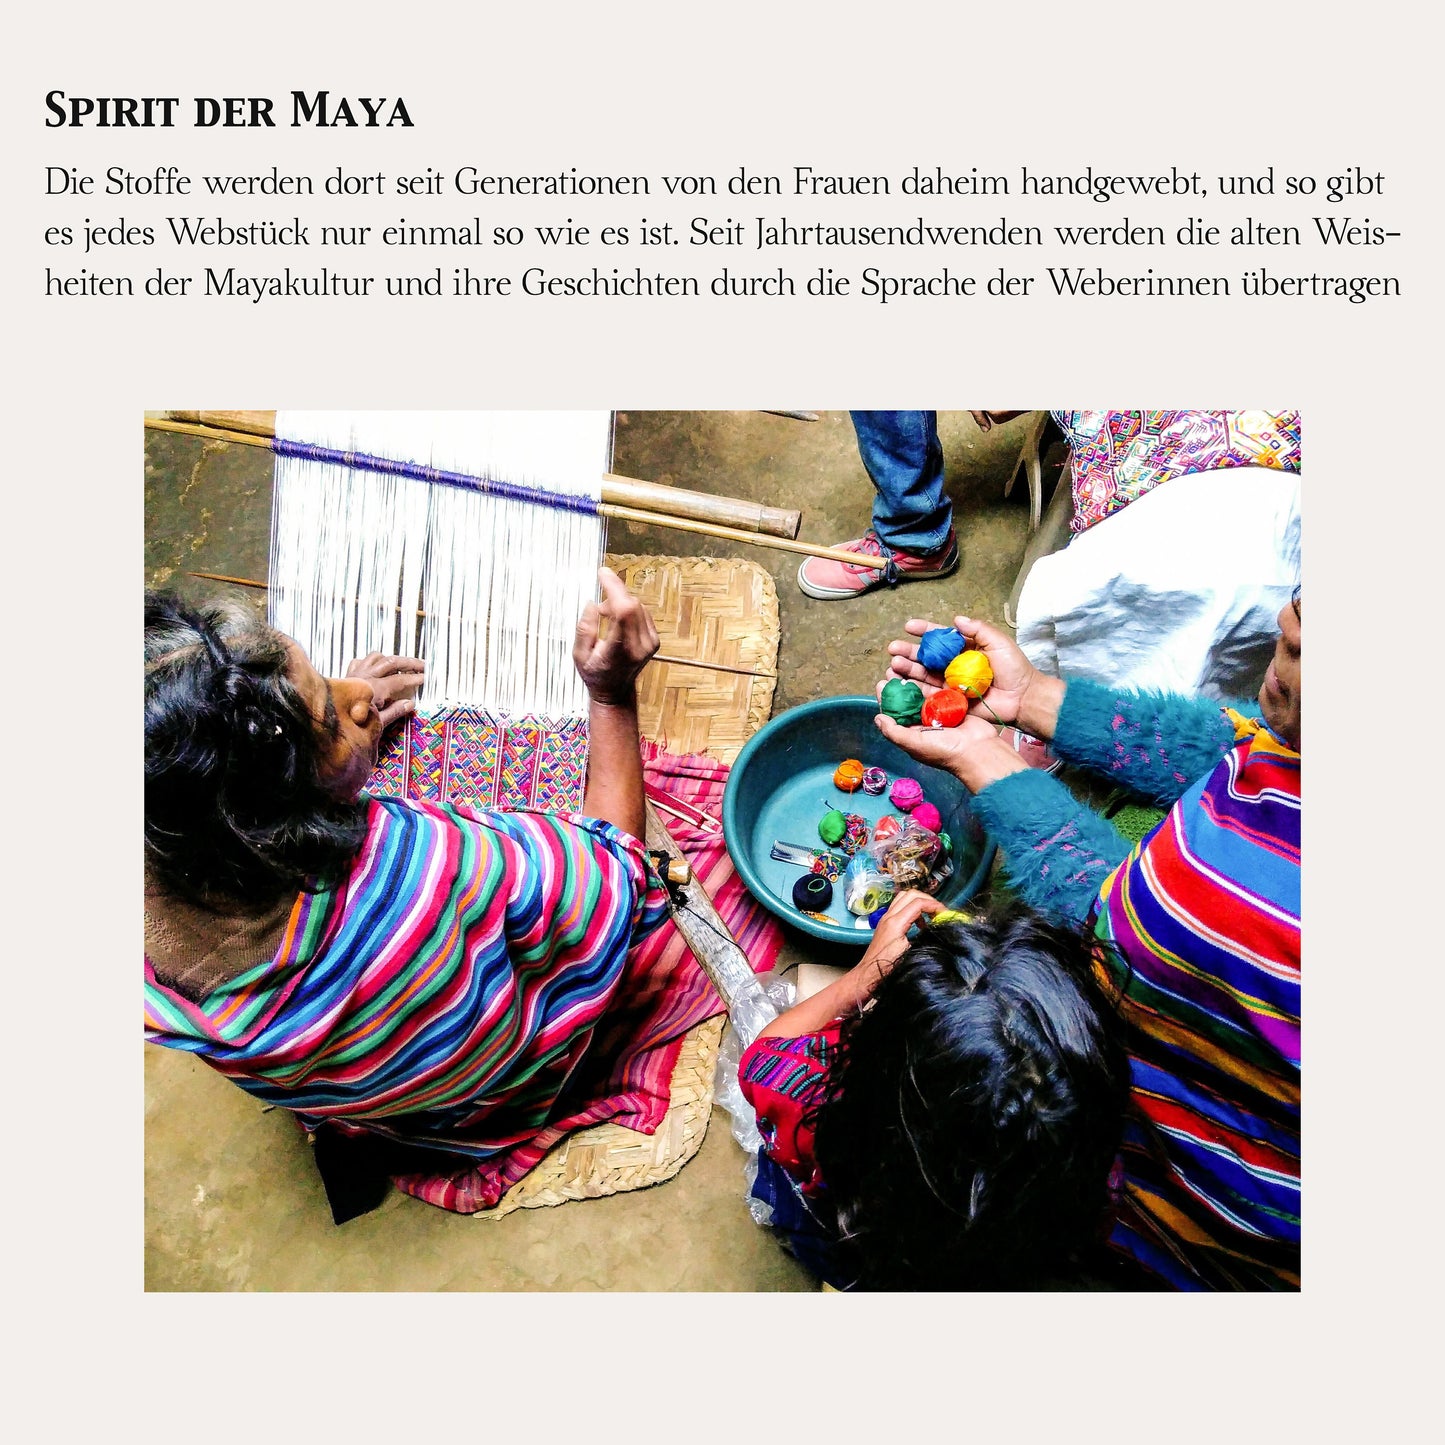 Seltener Stoff, weiß/grau,100x120cm Unikat aus Guatemala, handgewebt von Mayafrauen, Nähprojekte, wie Kissen, Westen, Taschen, Accessoires